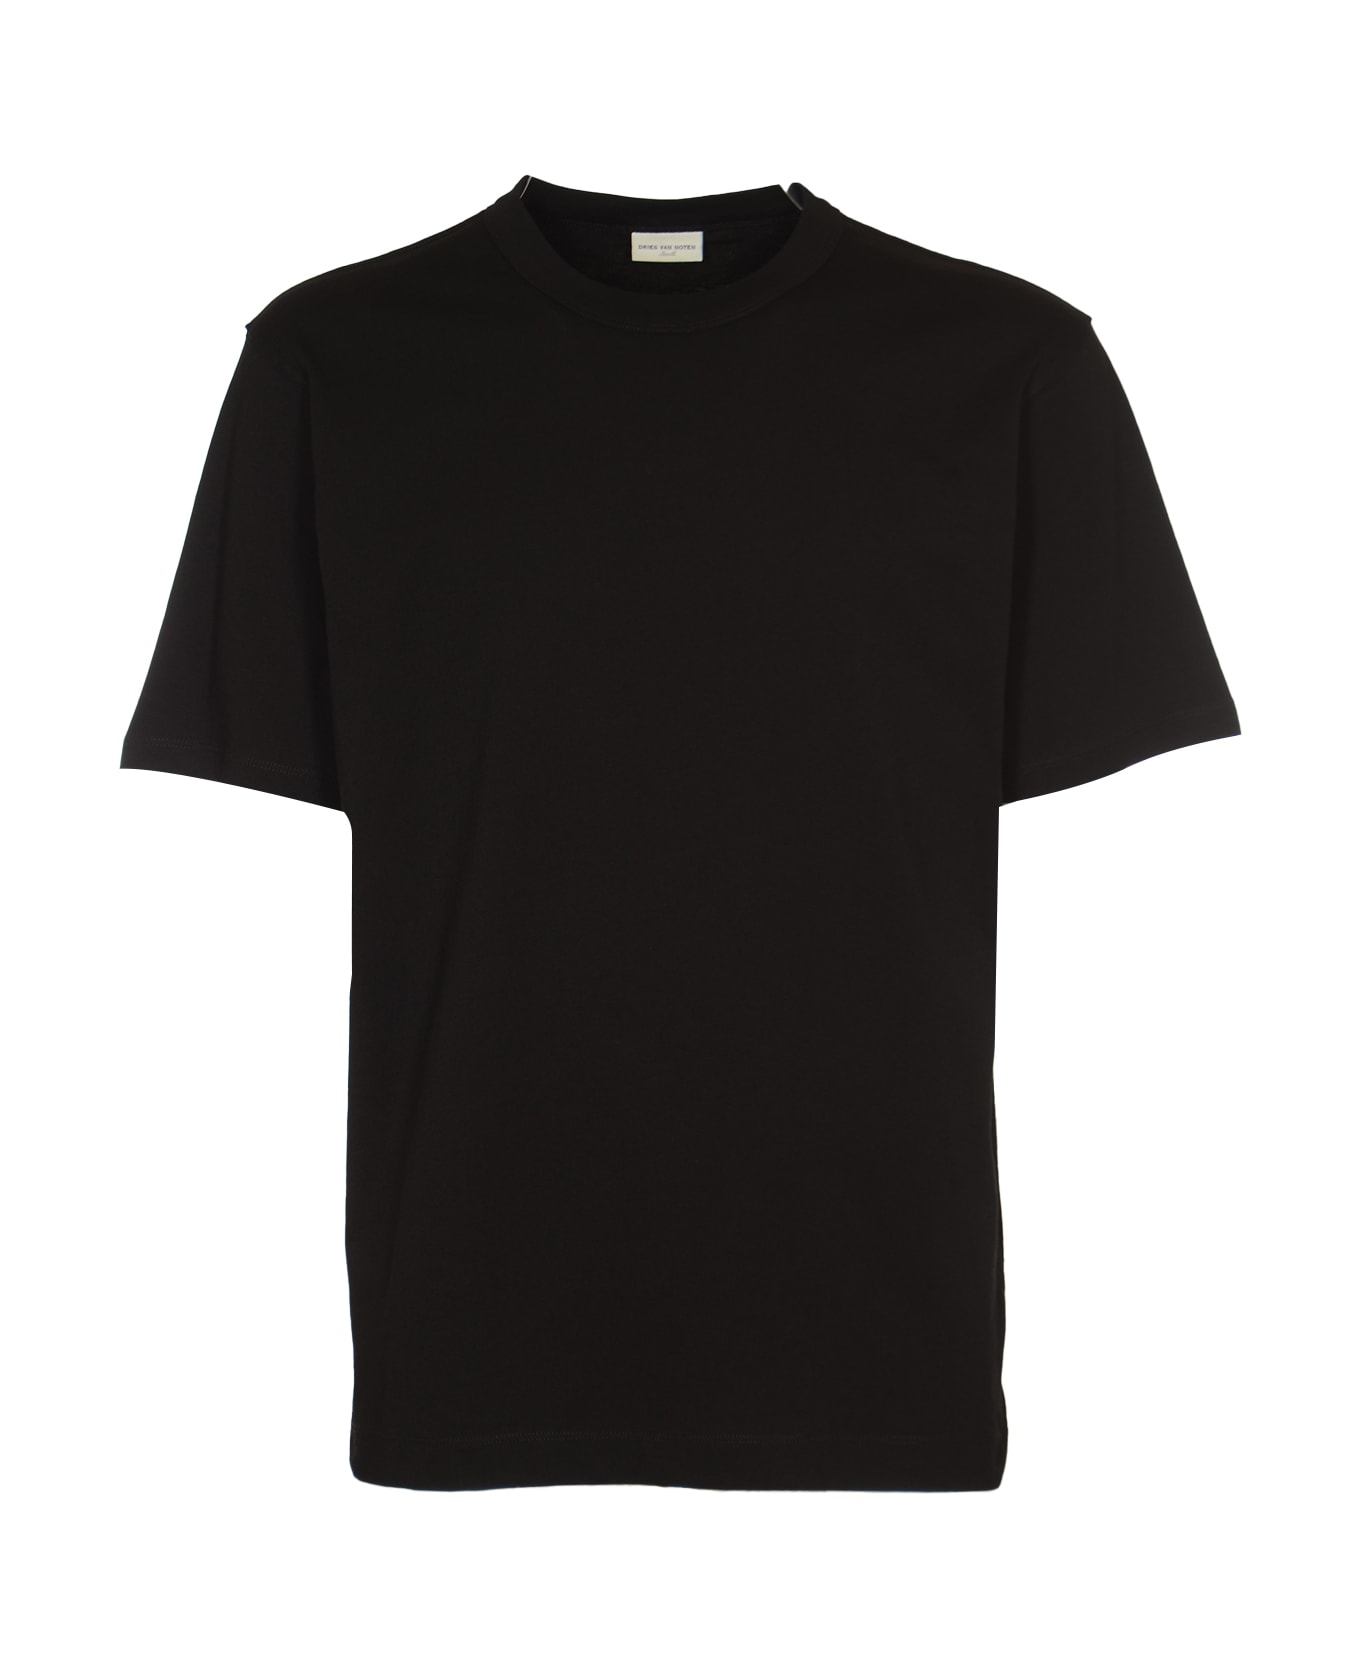 Dries Van Noten Heer T-shirt - Black